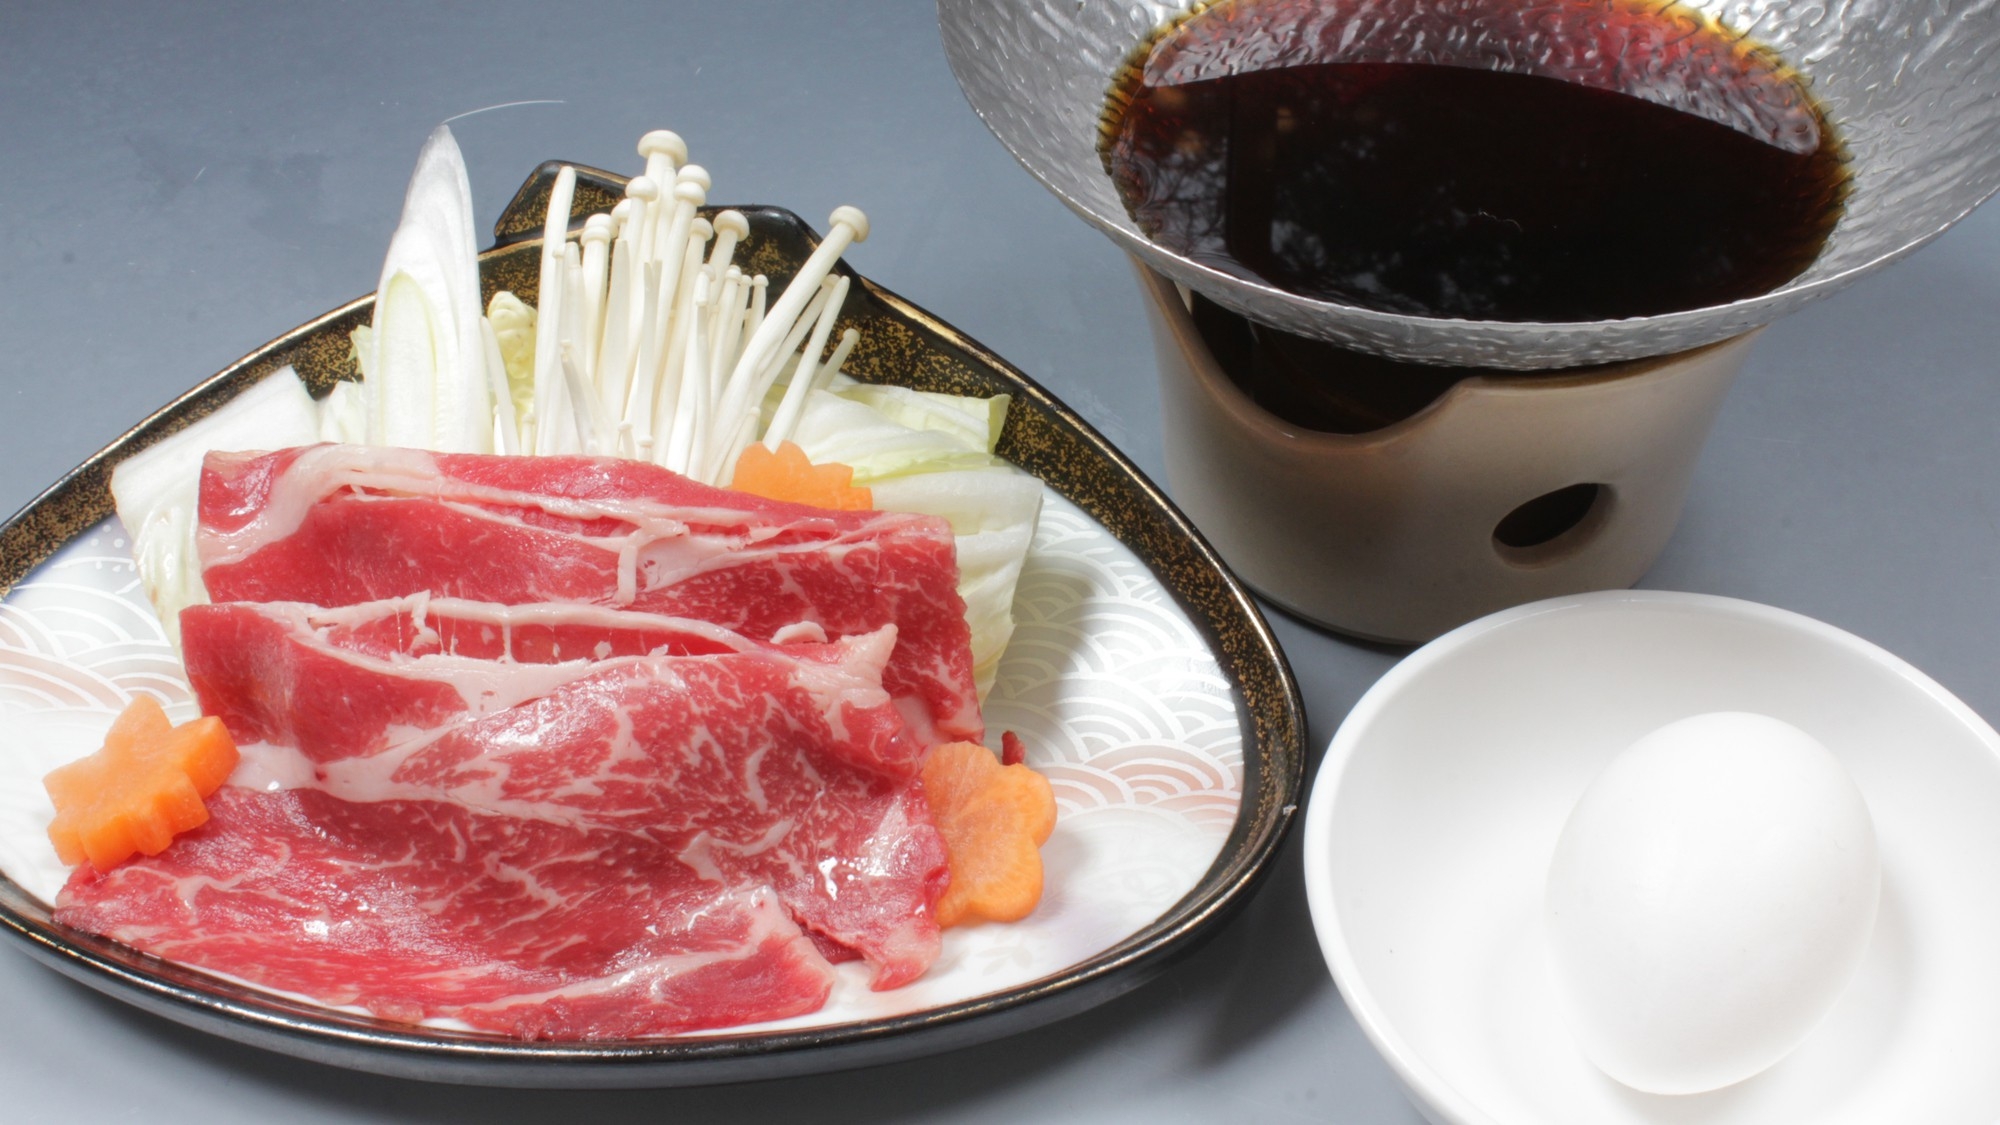 【栃木の味覚】栃木牛肉料理選択プラン【ホンモノを楽しむ旅】